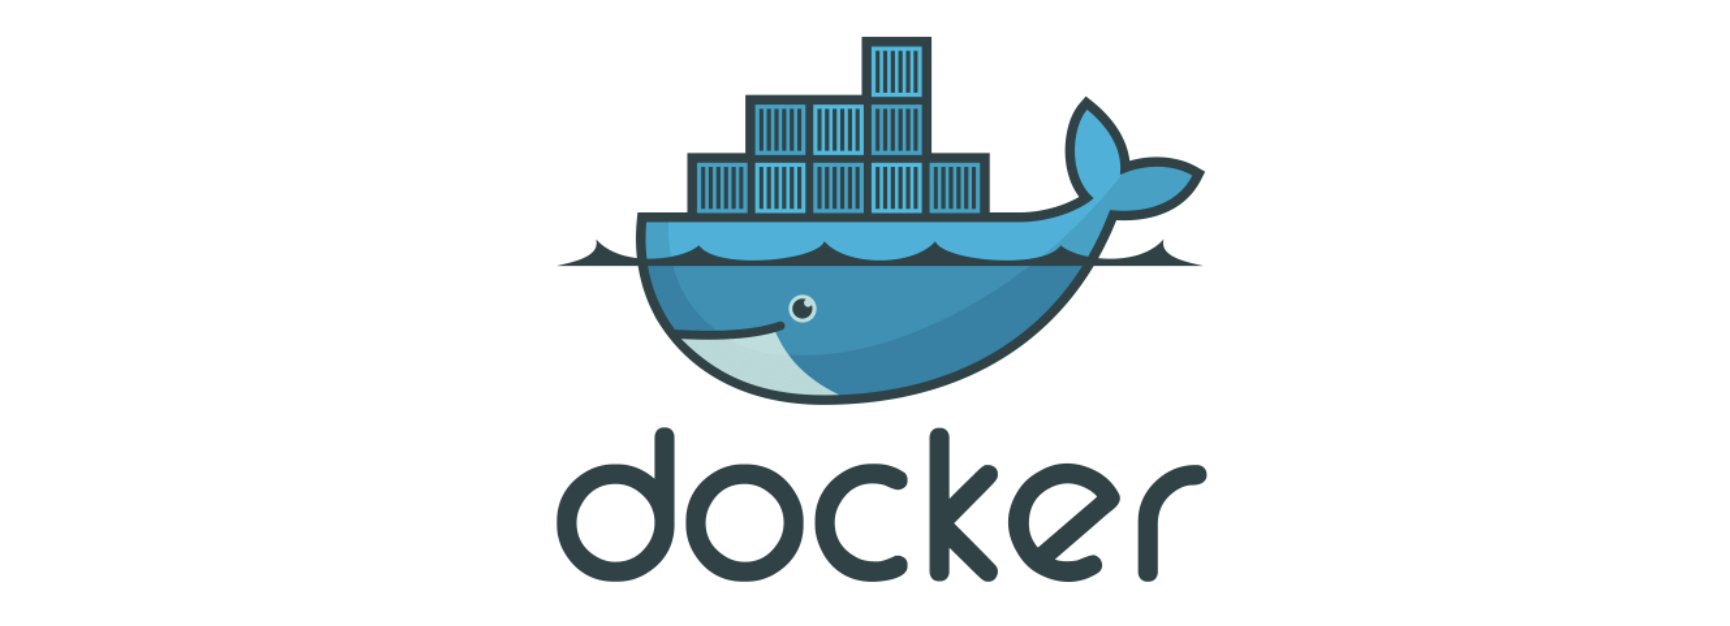 Docker Desktop 安装教程，以及推荐Docker作为学习工具的理由